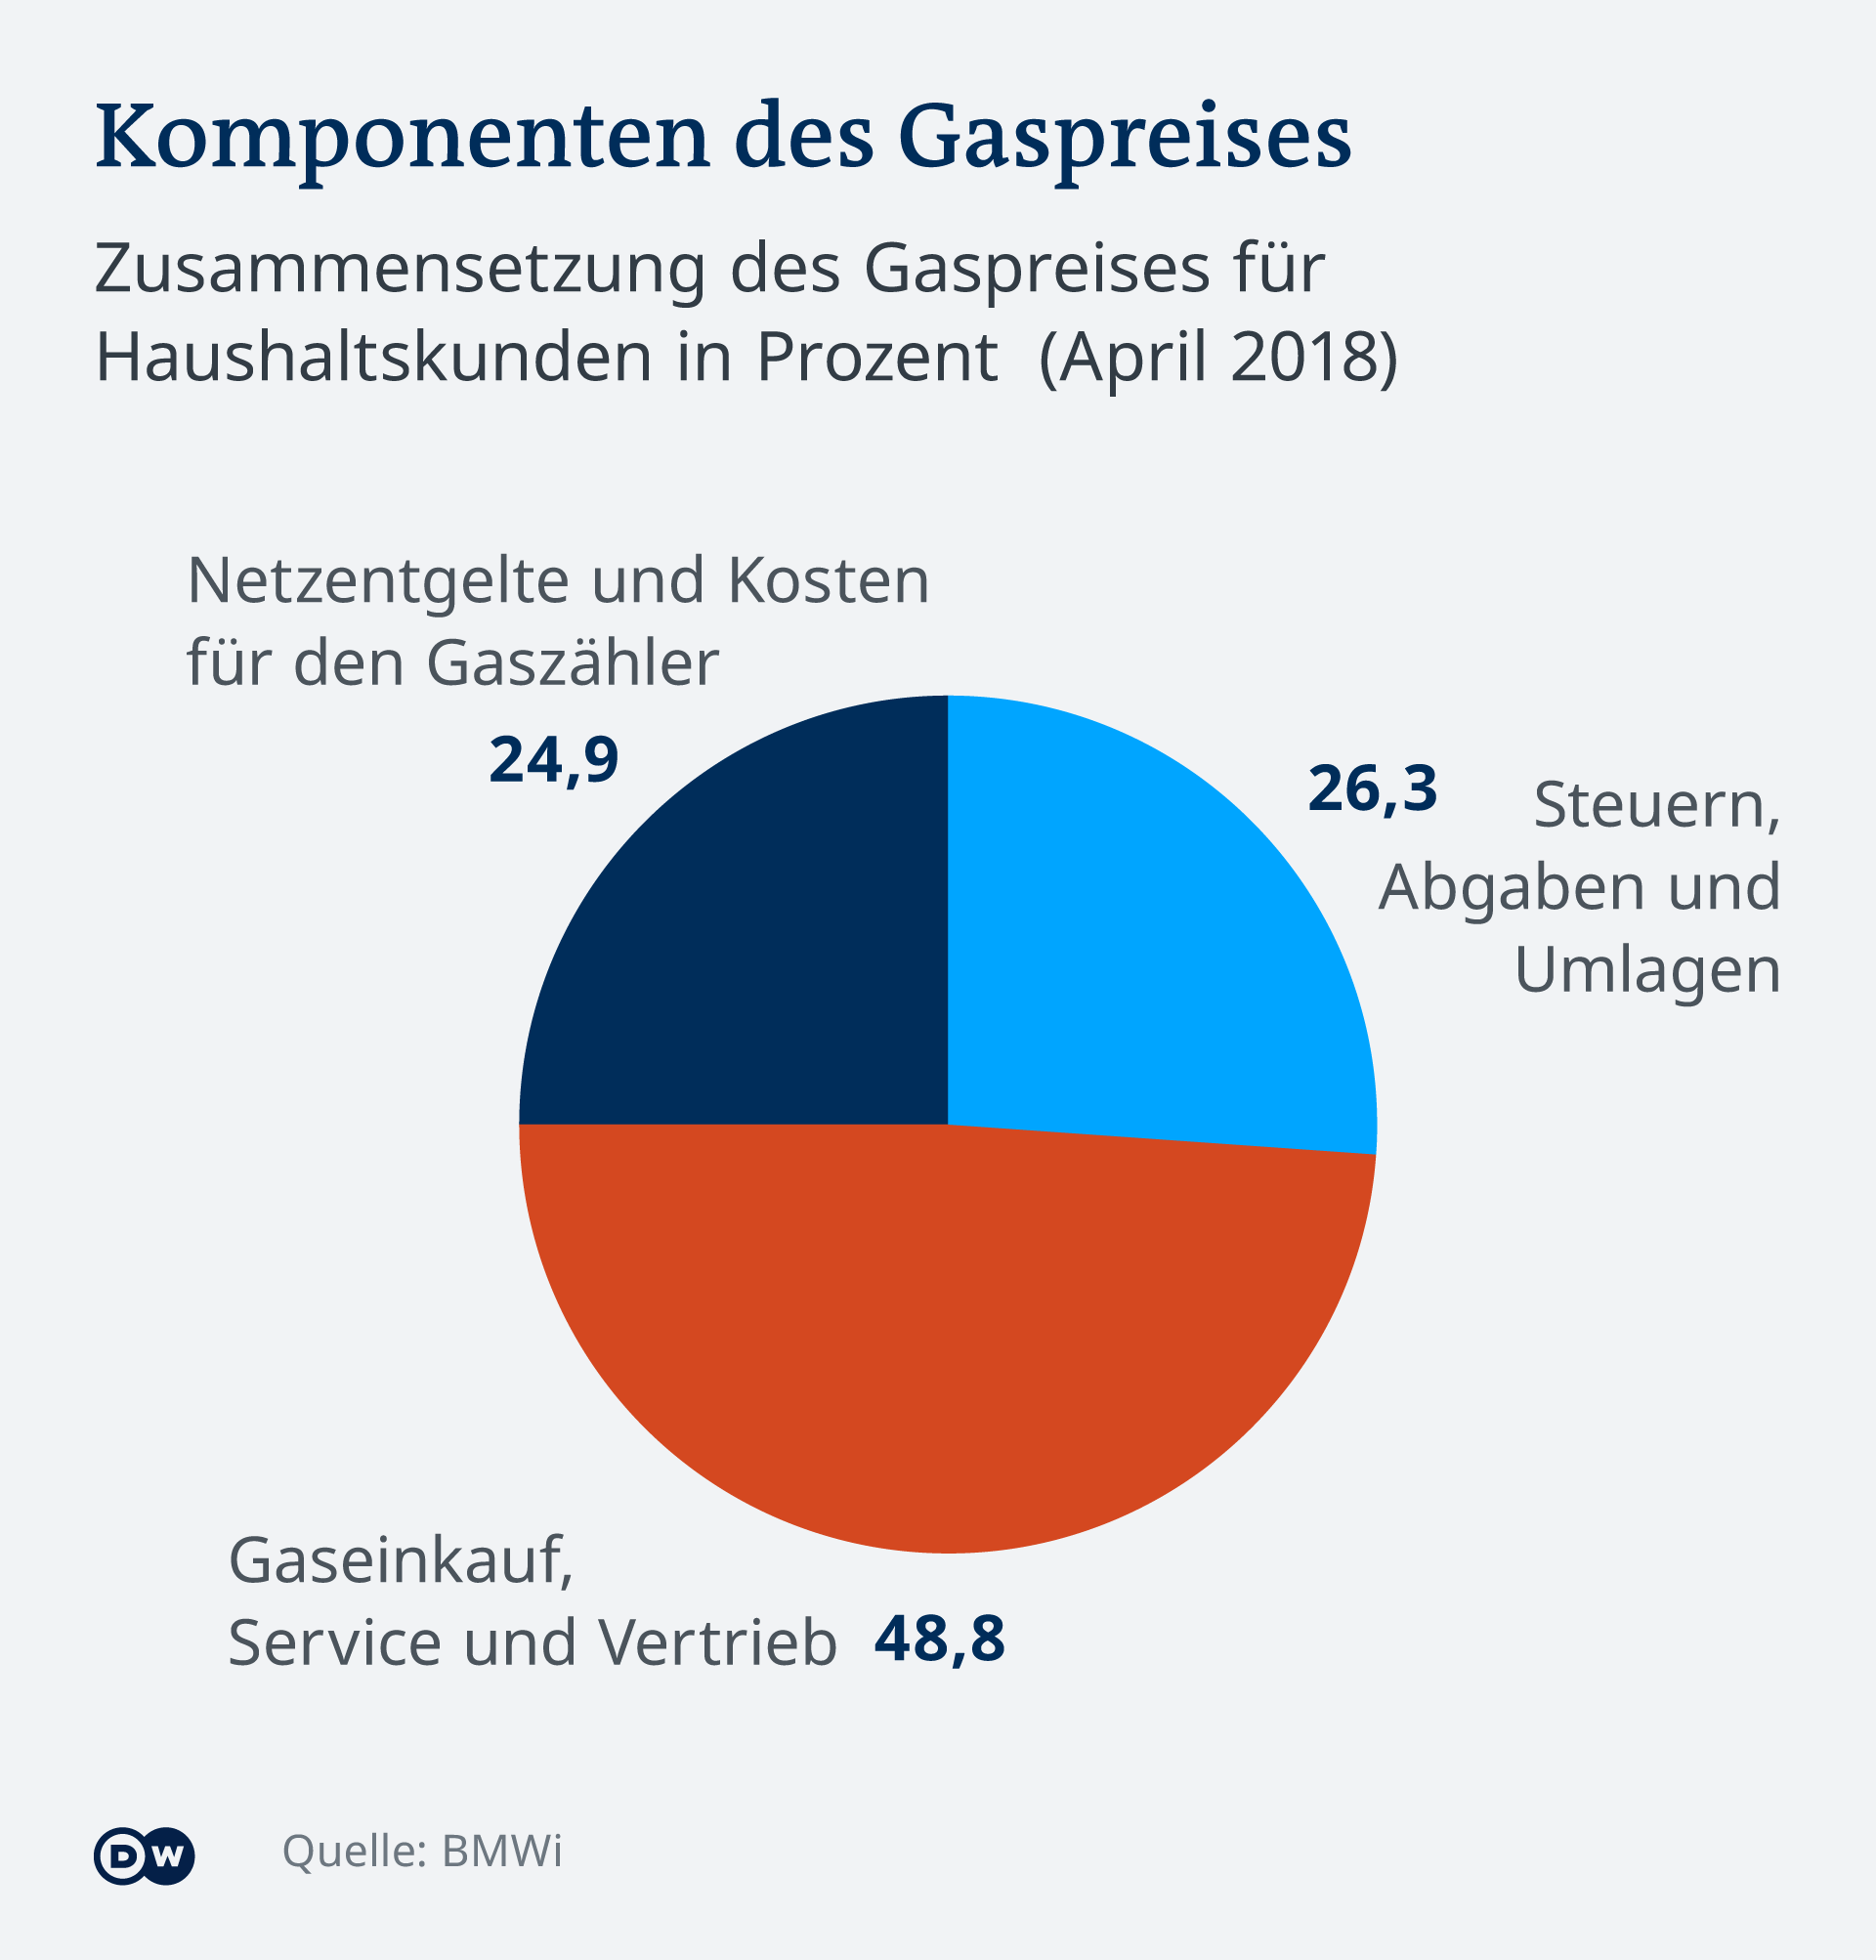 Komponenete cene gasa za potrošače: narandžasto su nabavna cena gasa i distribucija, tamno plavo su troškovi mreže i brojača, svetloplavo su porezi i nameti.